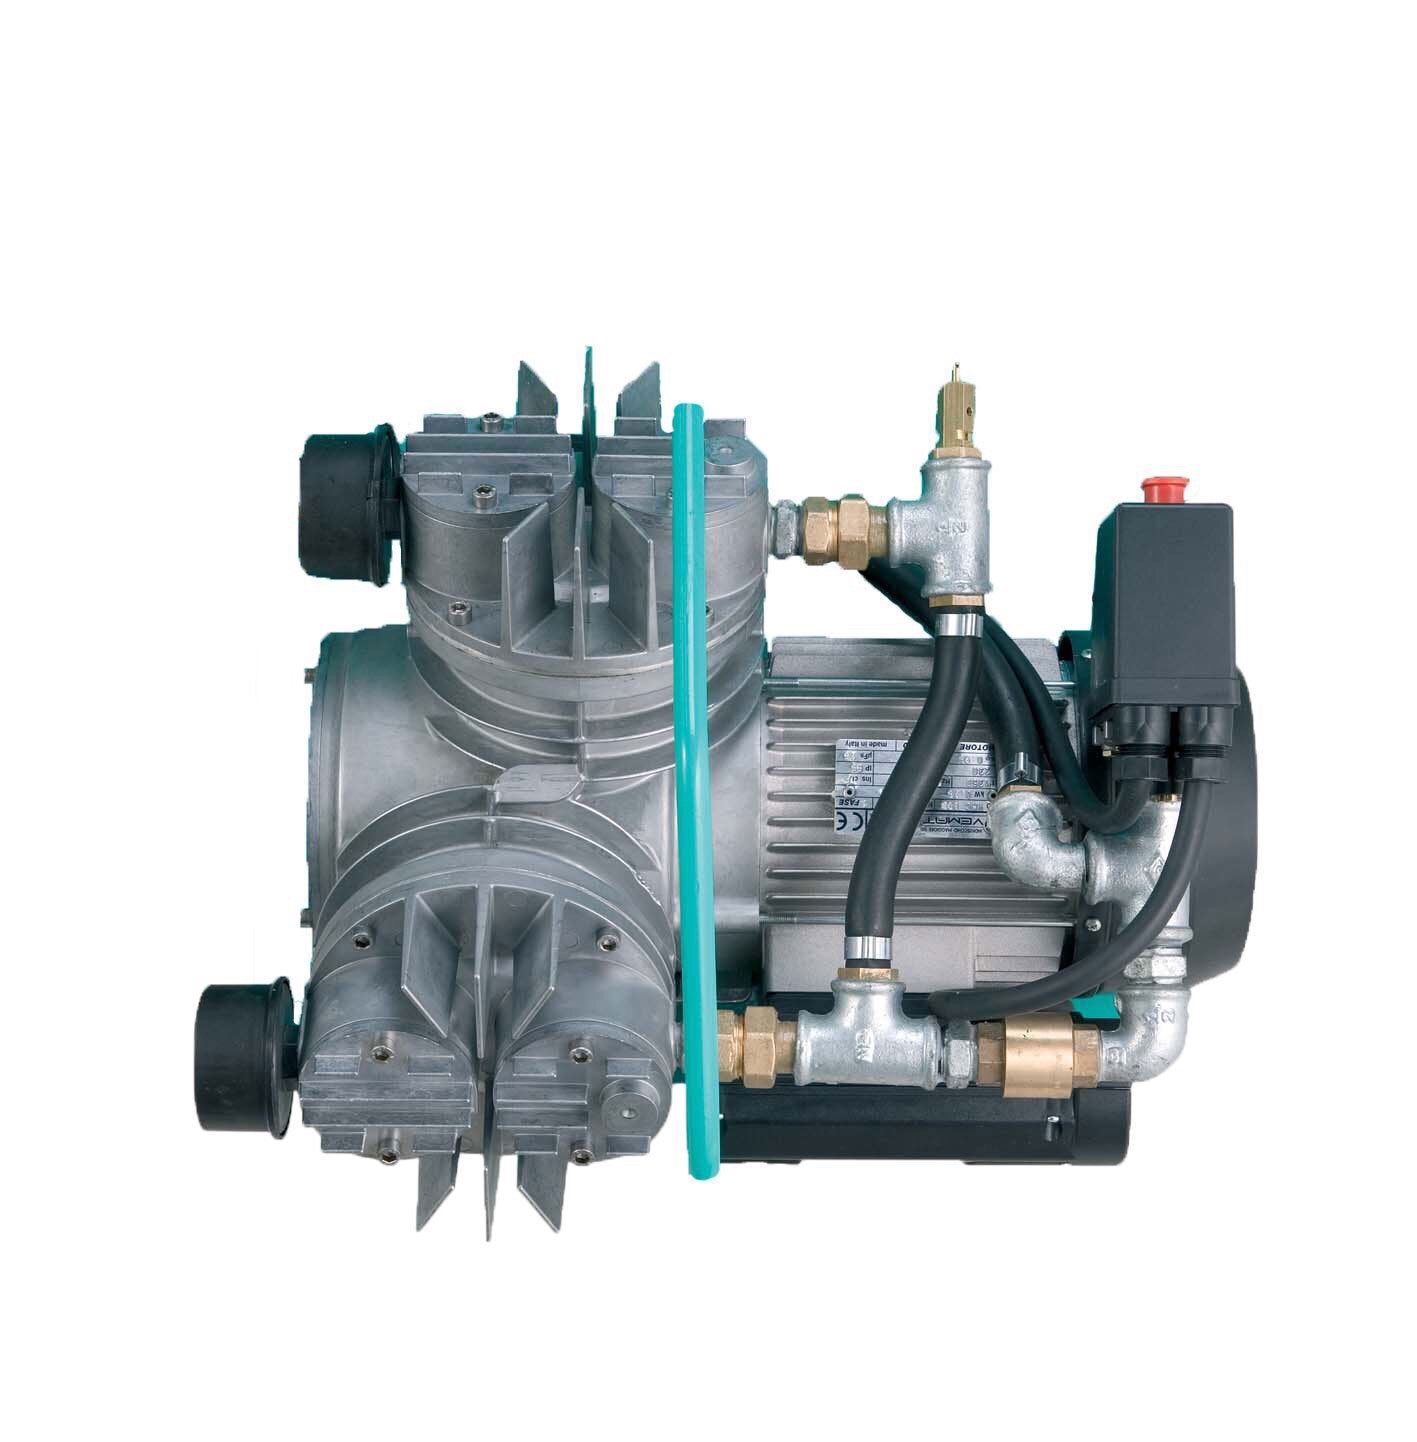 IMER Koine 35 - 9 CFM 220v Single Phase Air Compressor ( OPTIONAL )